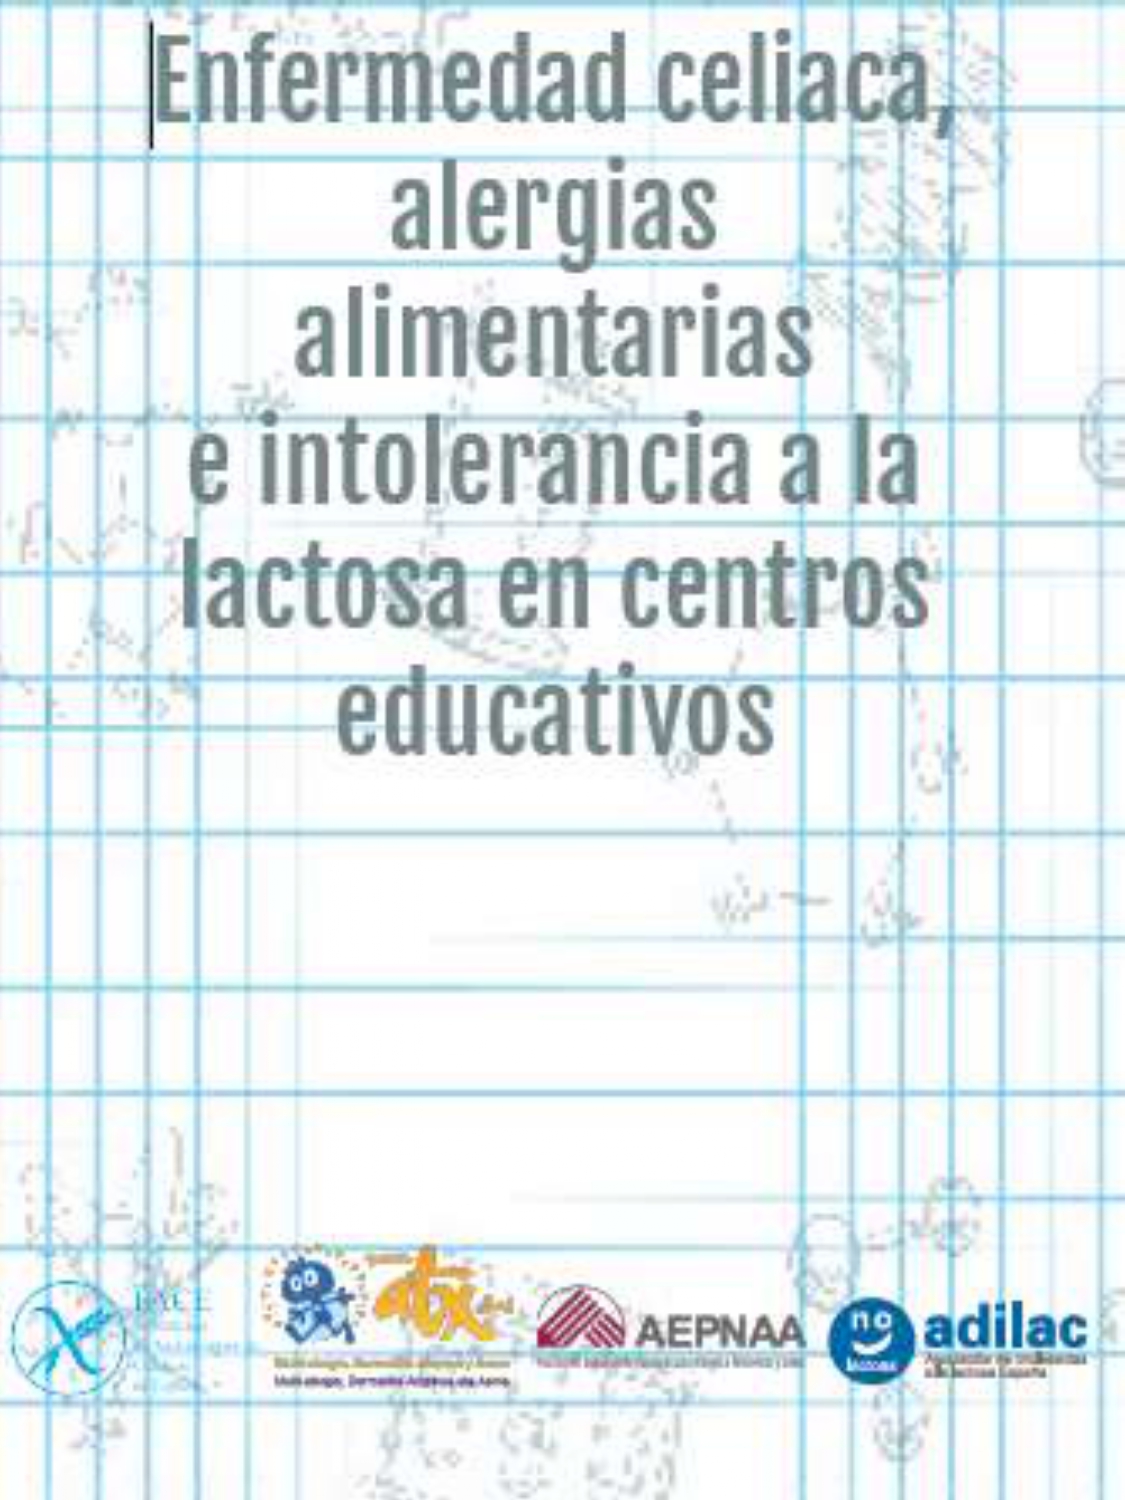 ENFERMEDAD CELIACA, ALERGIAS ALIMENTARIAS E INTOLERANCIAS A LA LACTOSA EN CENTROS EDUCATIVOS